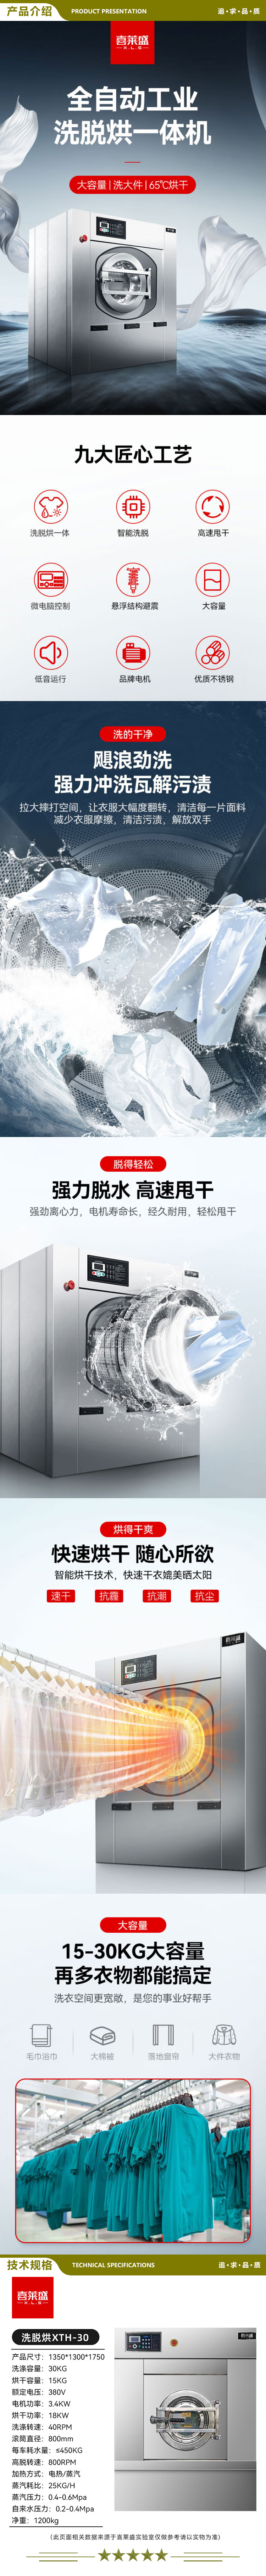 喜莱盛 XTH-30 自动商用洗脱烘一体机 大型工业洗衣机烘干机机酒店宾馆床单干衣机30公斤级  2.jpg